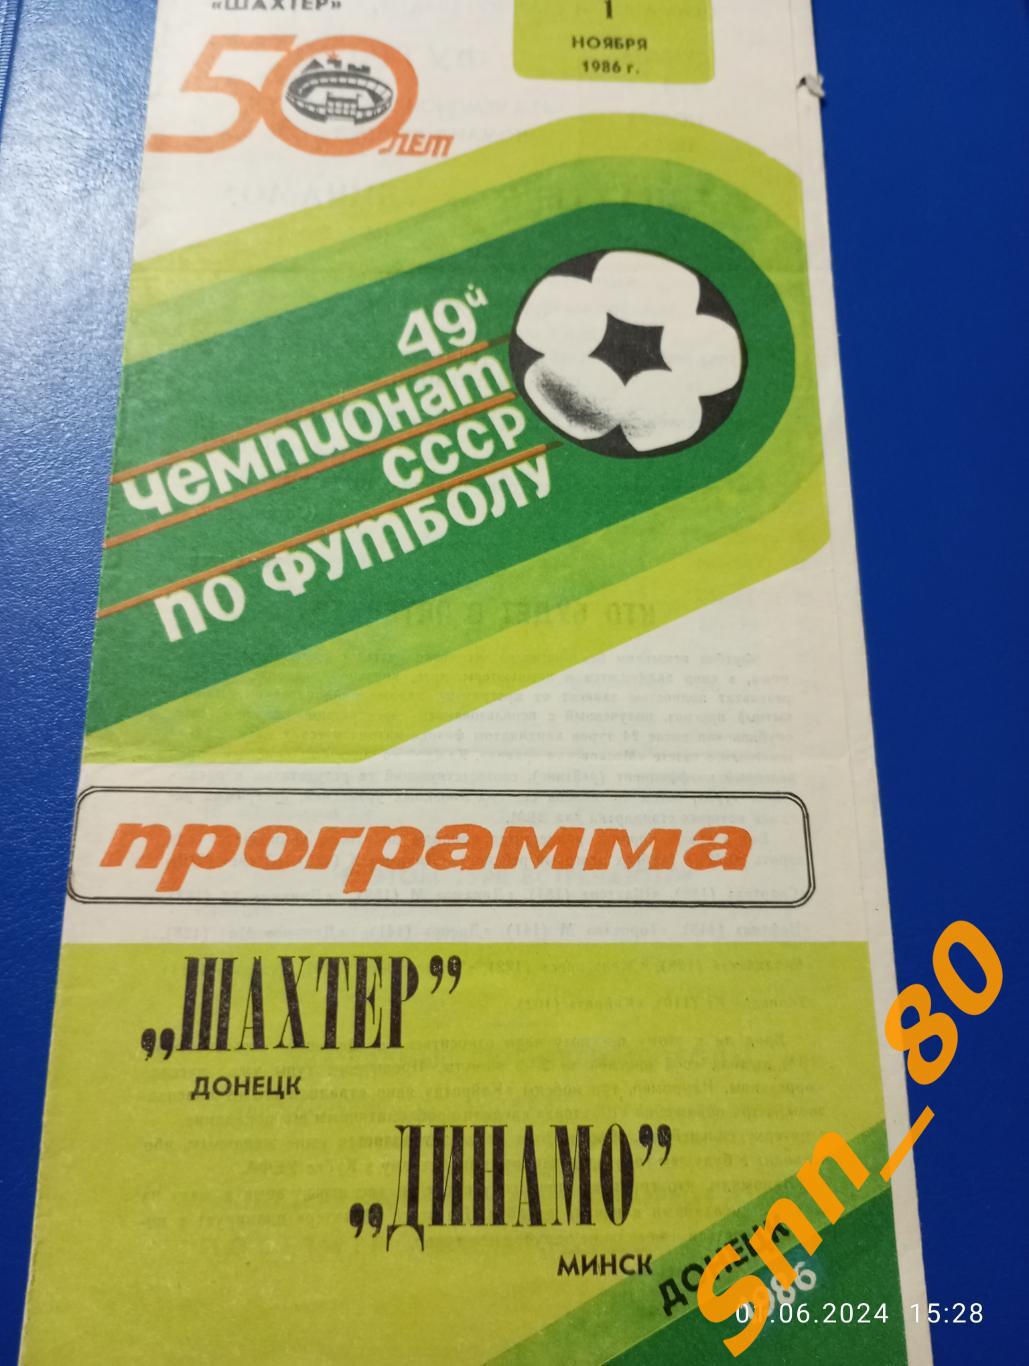 Шахтер Донецк - Динамо Минск 1986